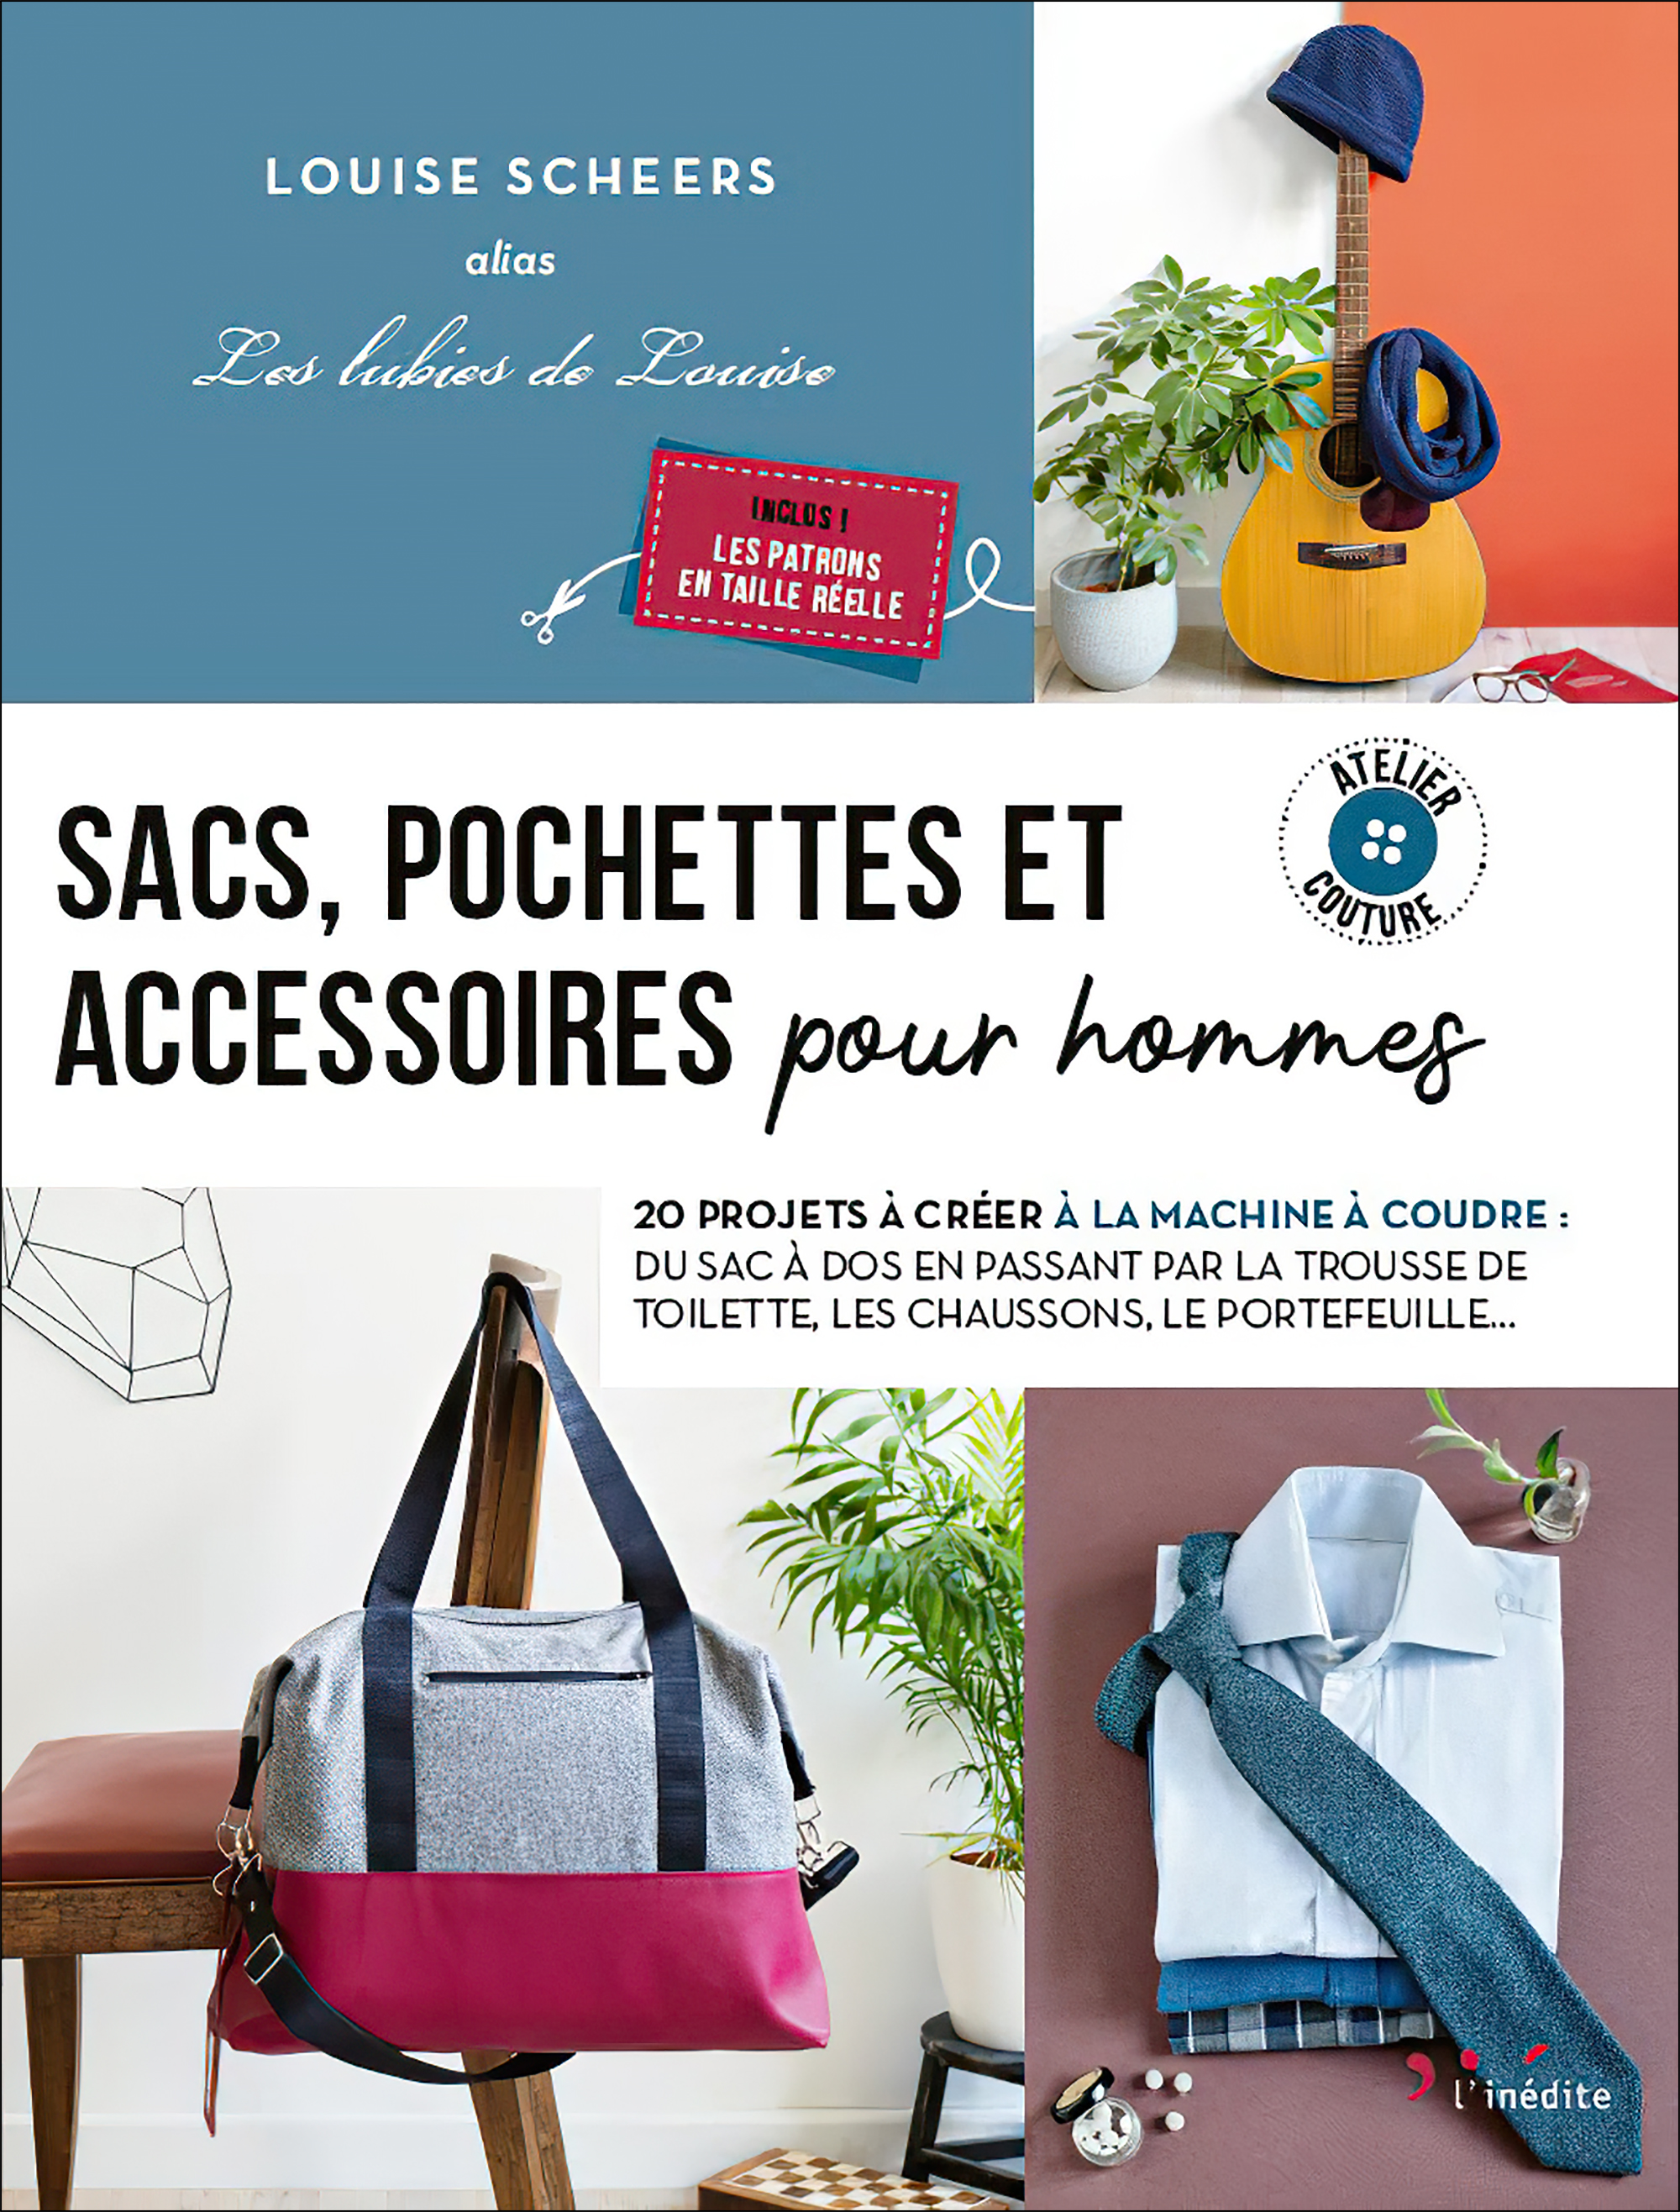 Couture débutant - Sacs et Pochettes - Ateliers By The way